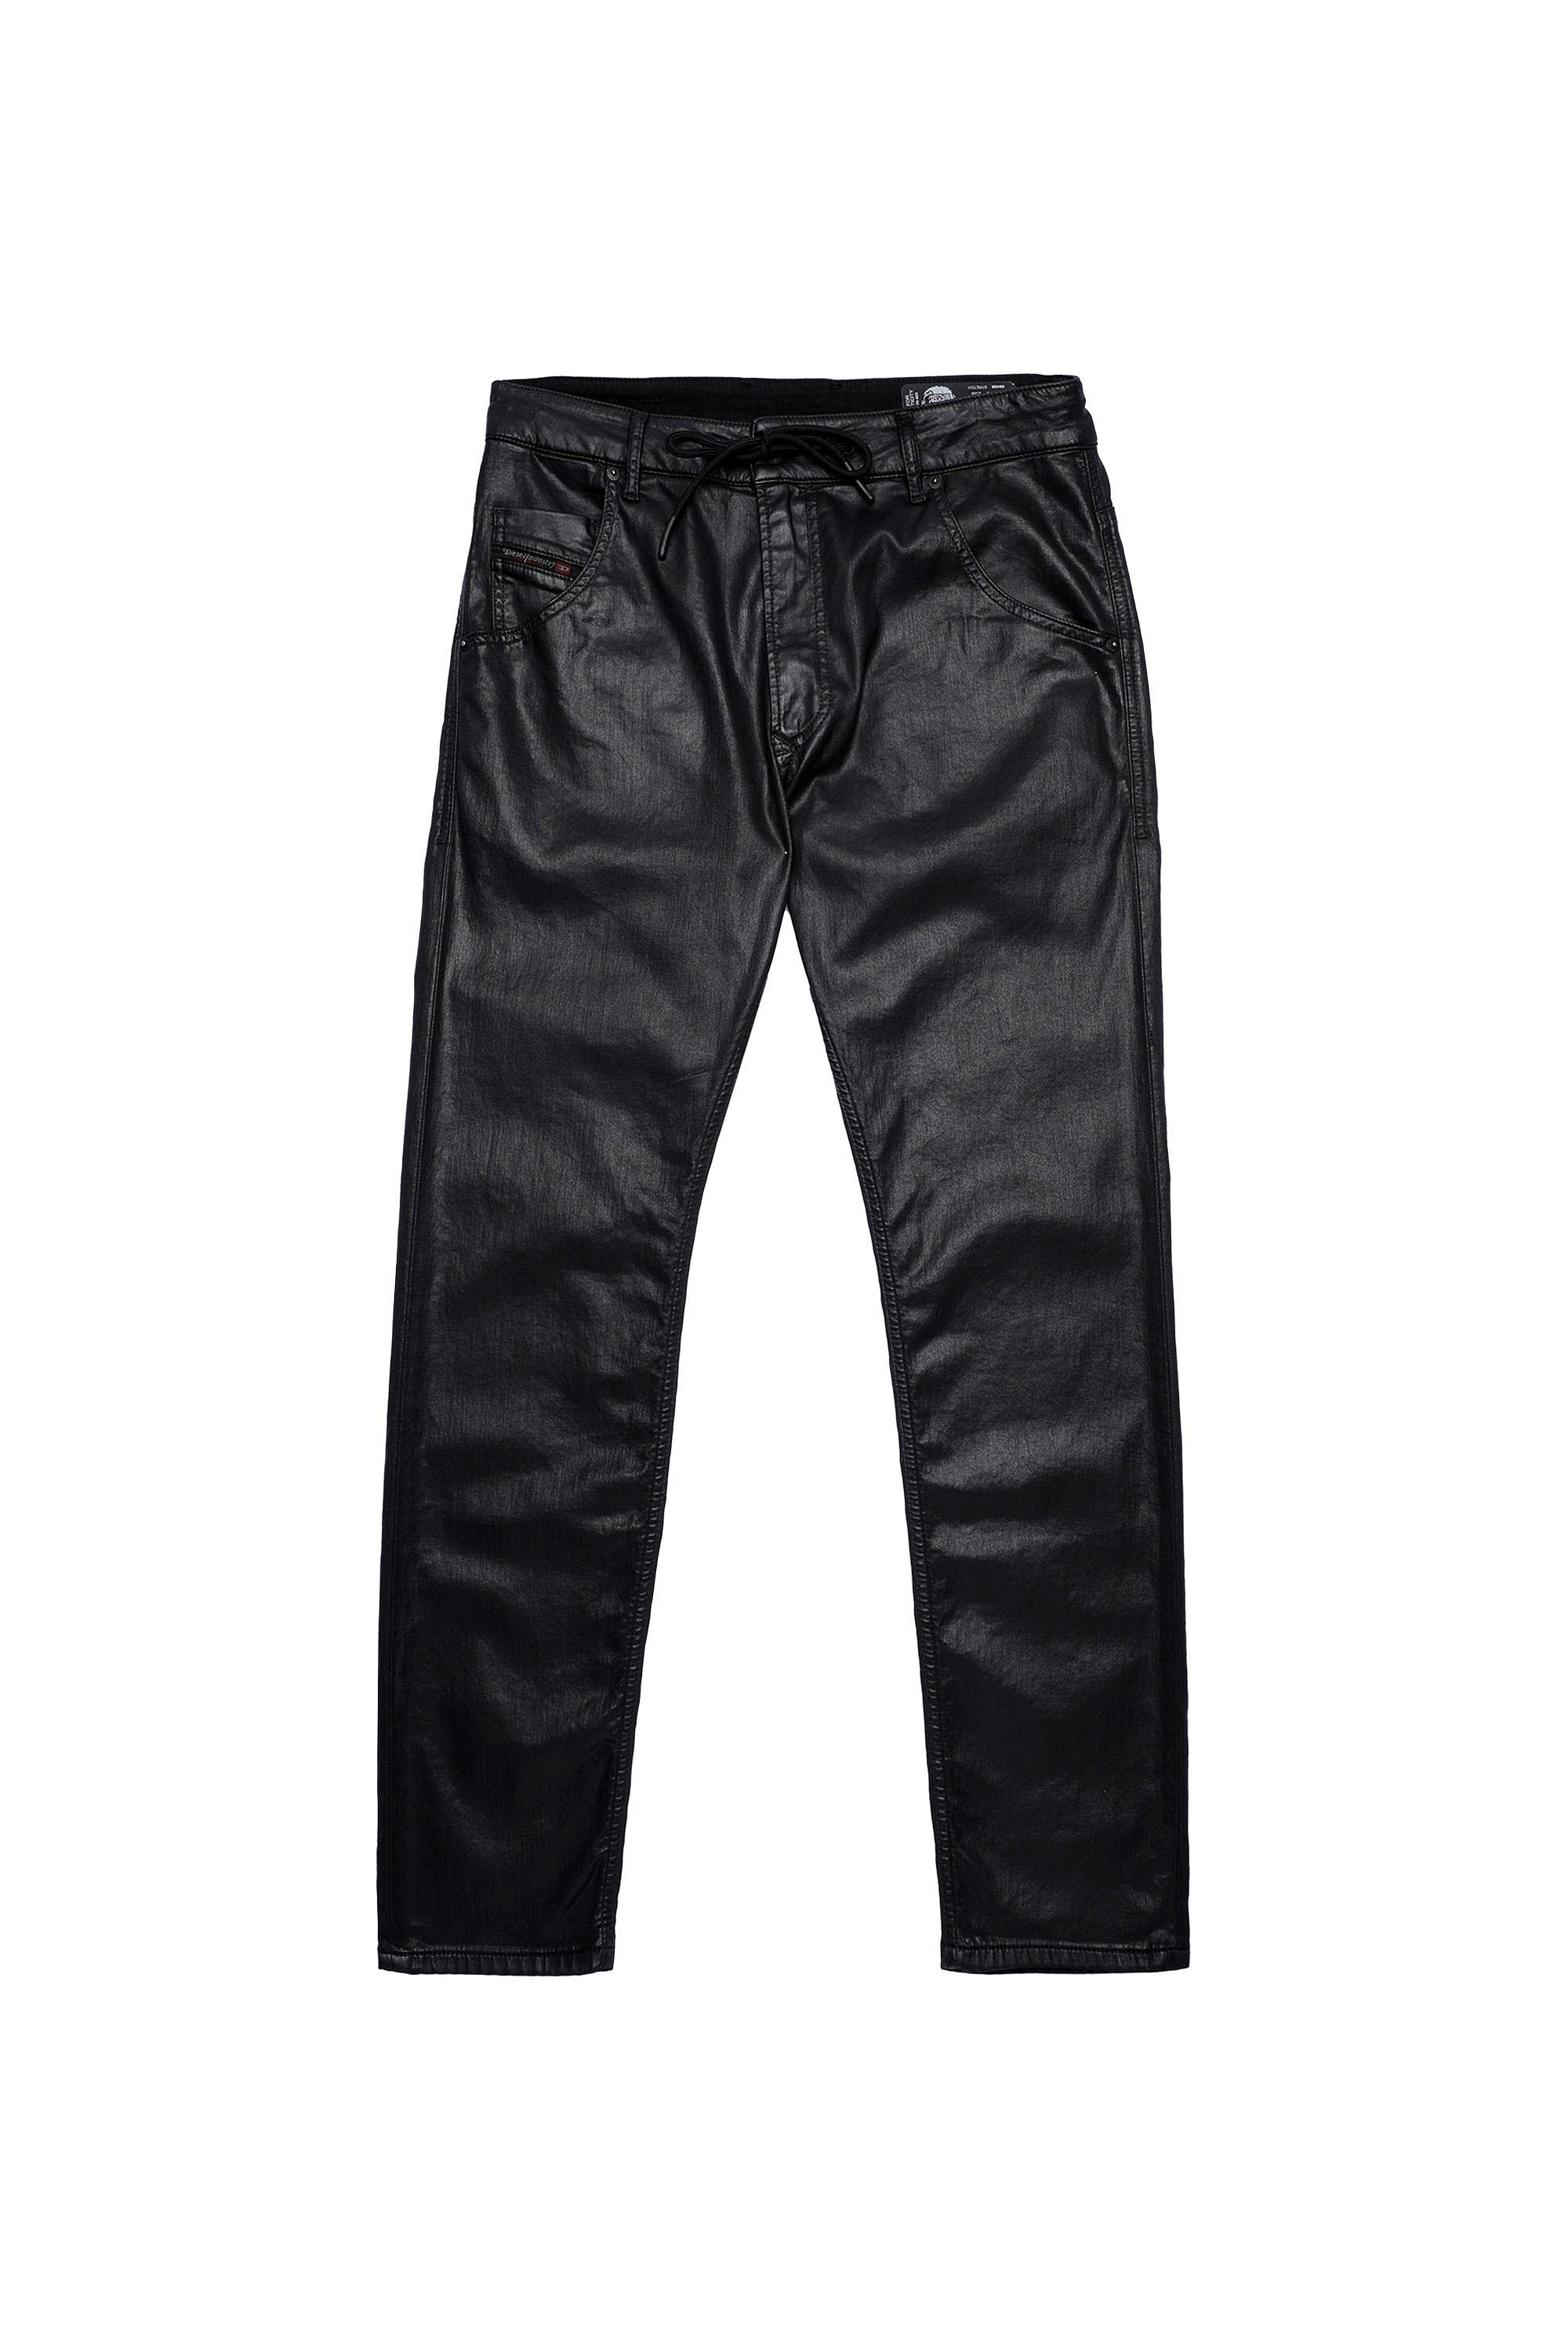 Diesel - Krooley Tapered JoggJeans® 0849R, Black/Dark Grey - Image 2